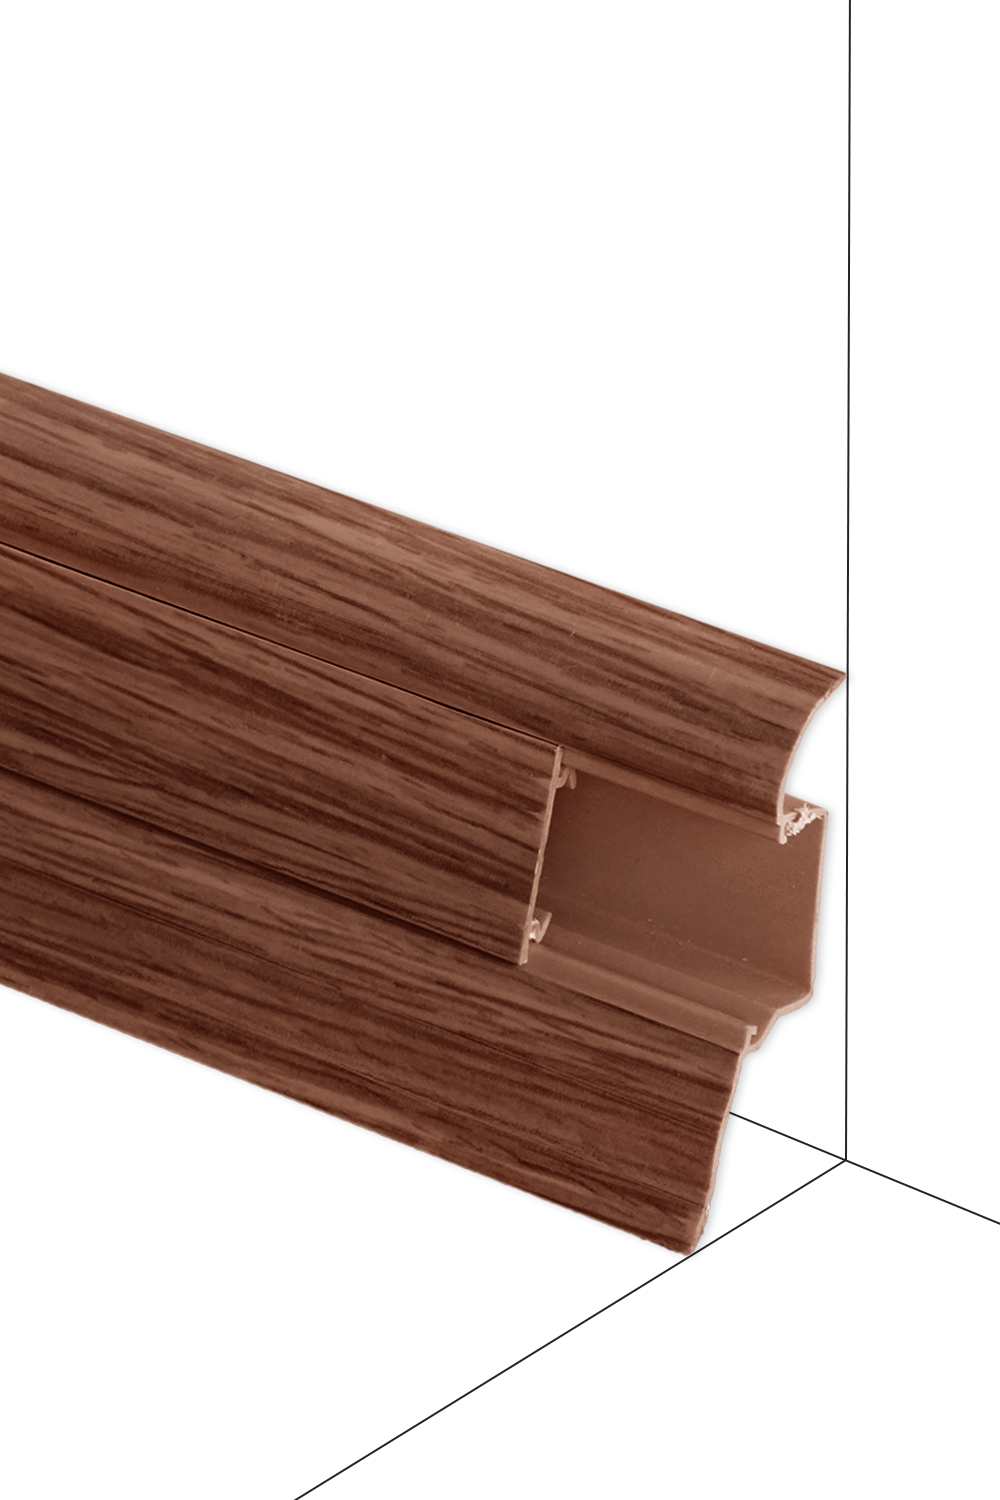 Podlahová lišta Döllken W167 - Nerbau - dĺžka 250 cm Lišta 